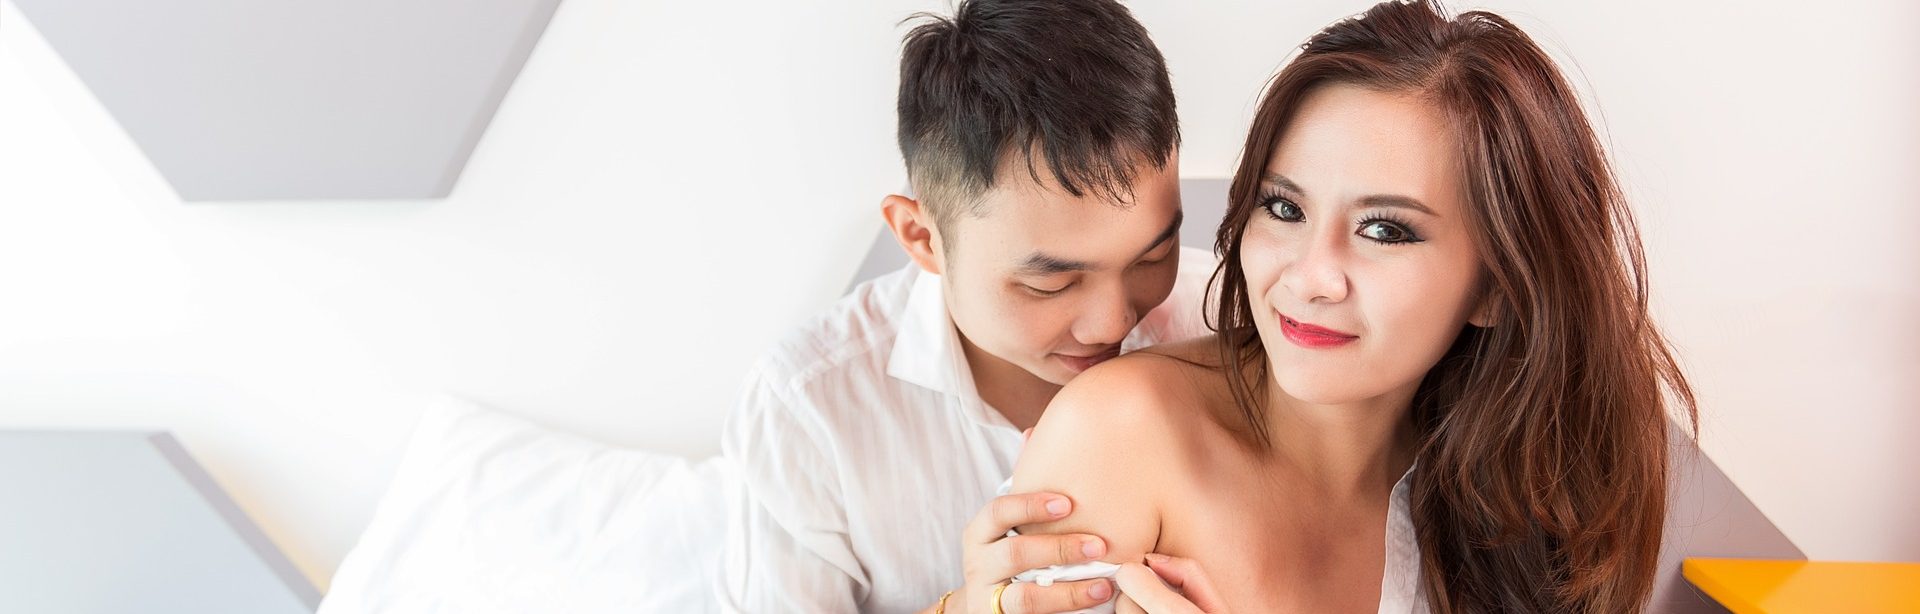 6 вещей в сексе, о которых мечтает каждый мужчина